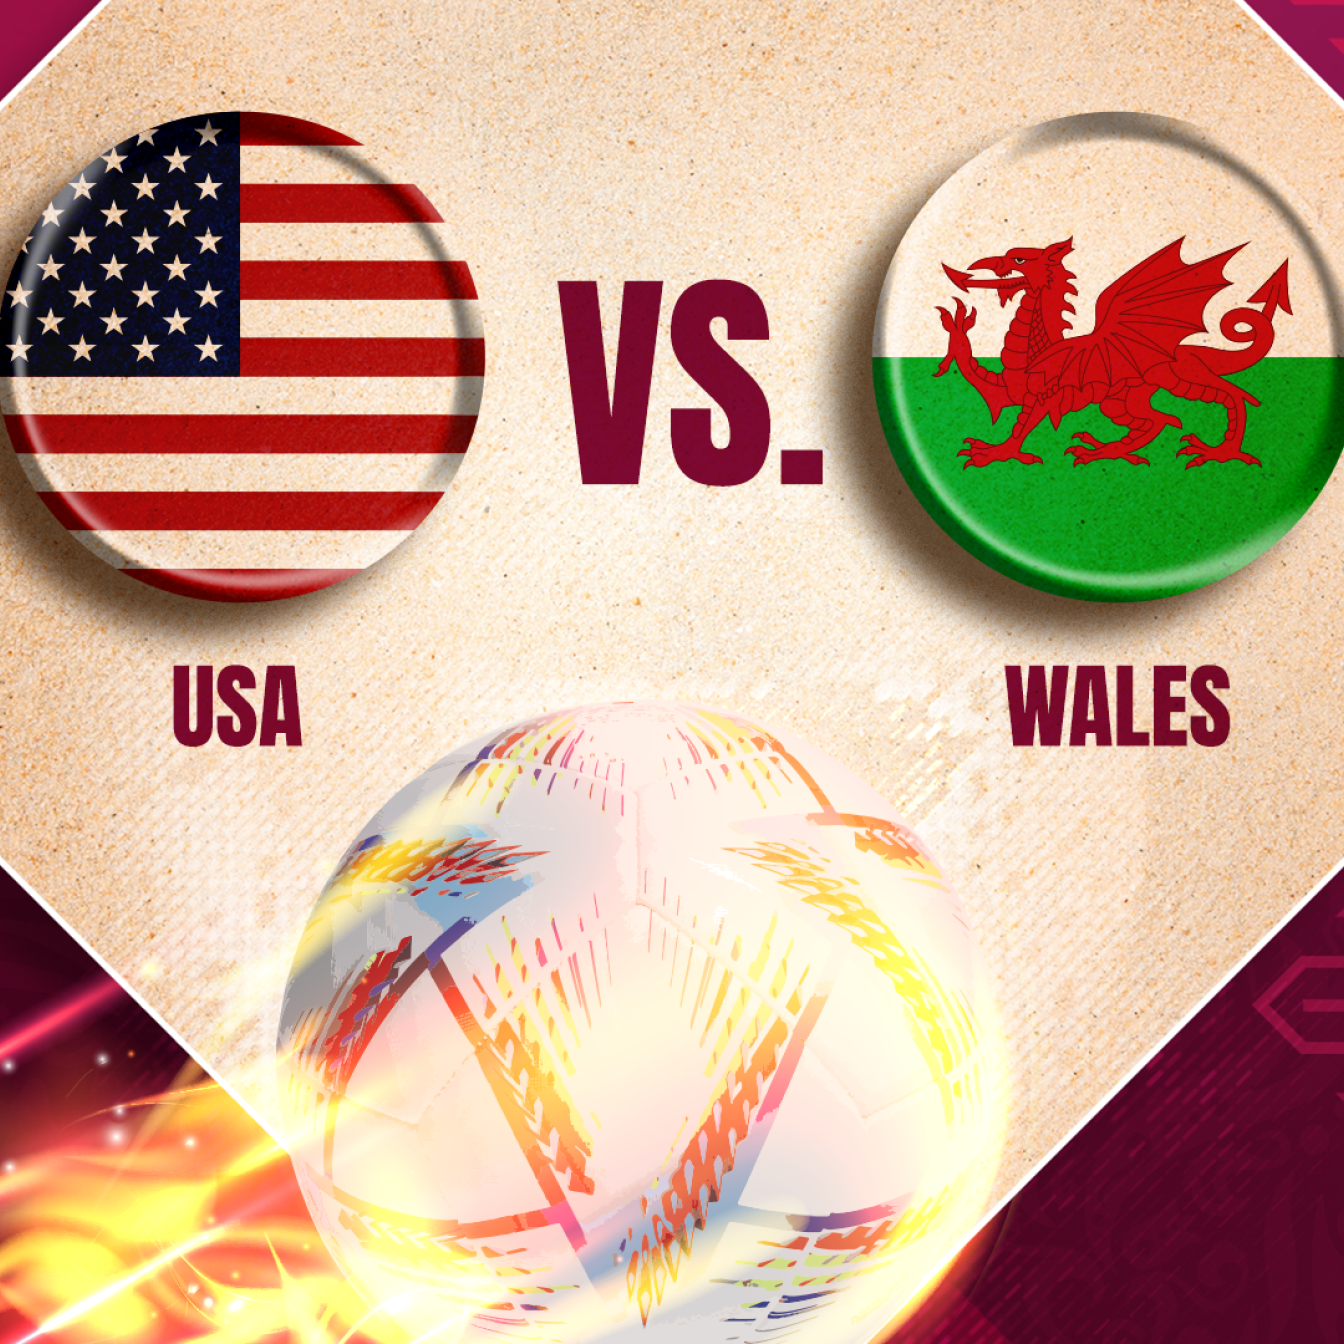 Das WM-Match zwischen USA und Wales im Liveticker auf PULS 24.